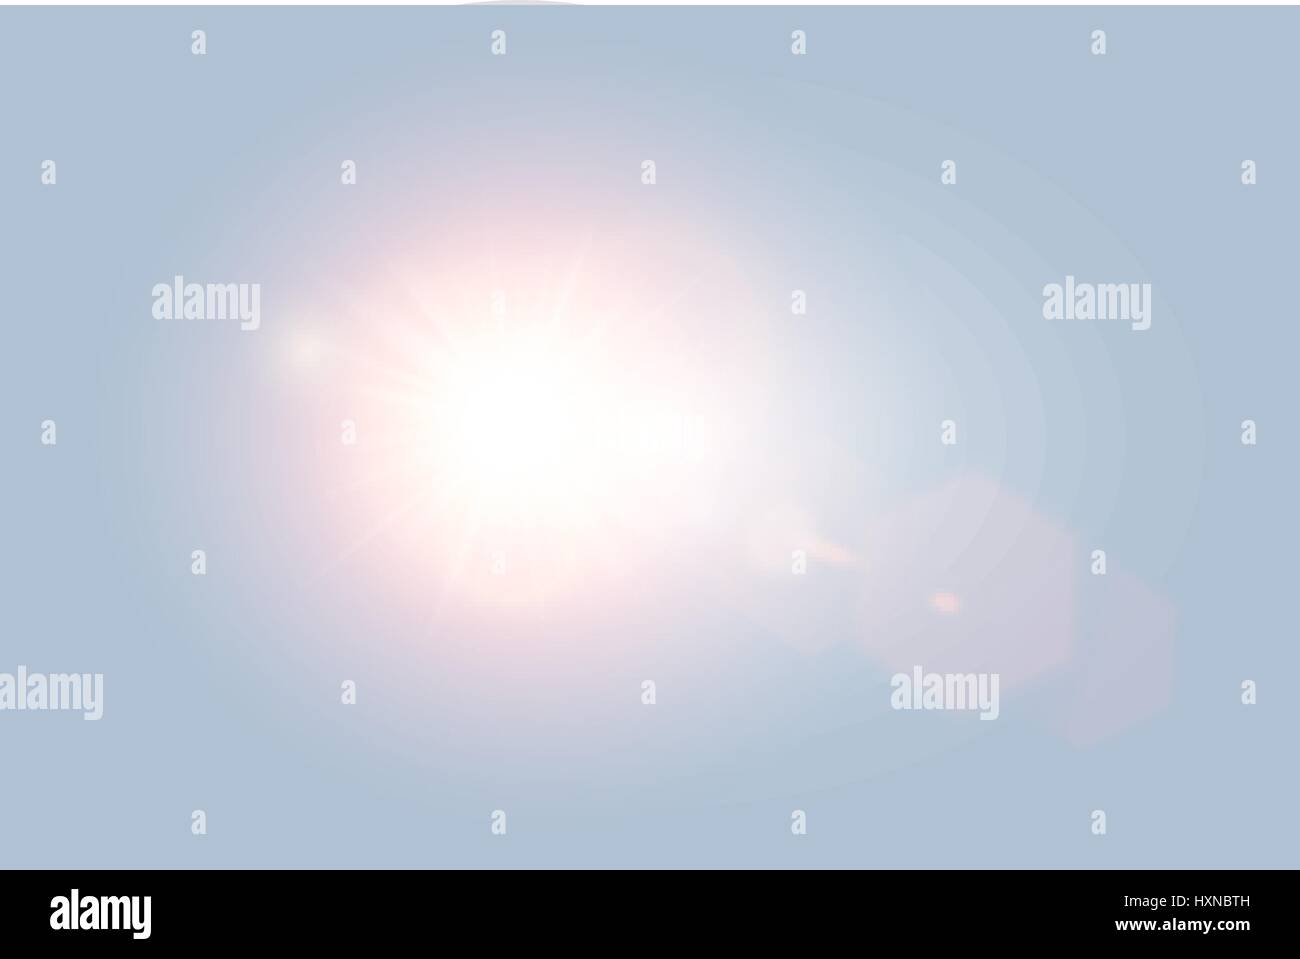 Vector transparente brillante luz solar día Lens Flare con elementos hexagonales sobre fondo de color azul claro. Sunrice o puesta de sol, lluvia de estrellas. Ilustración del Vector